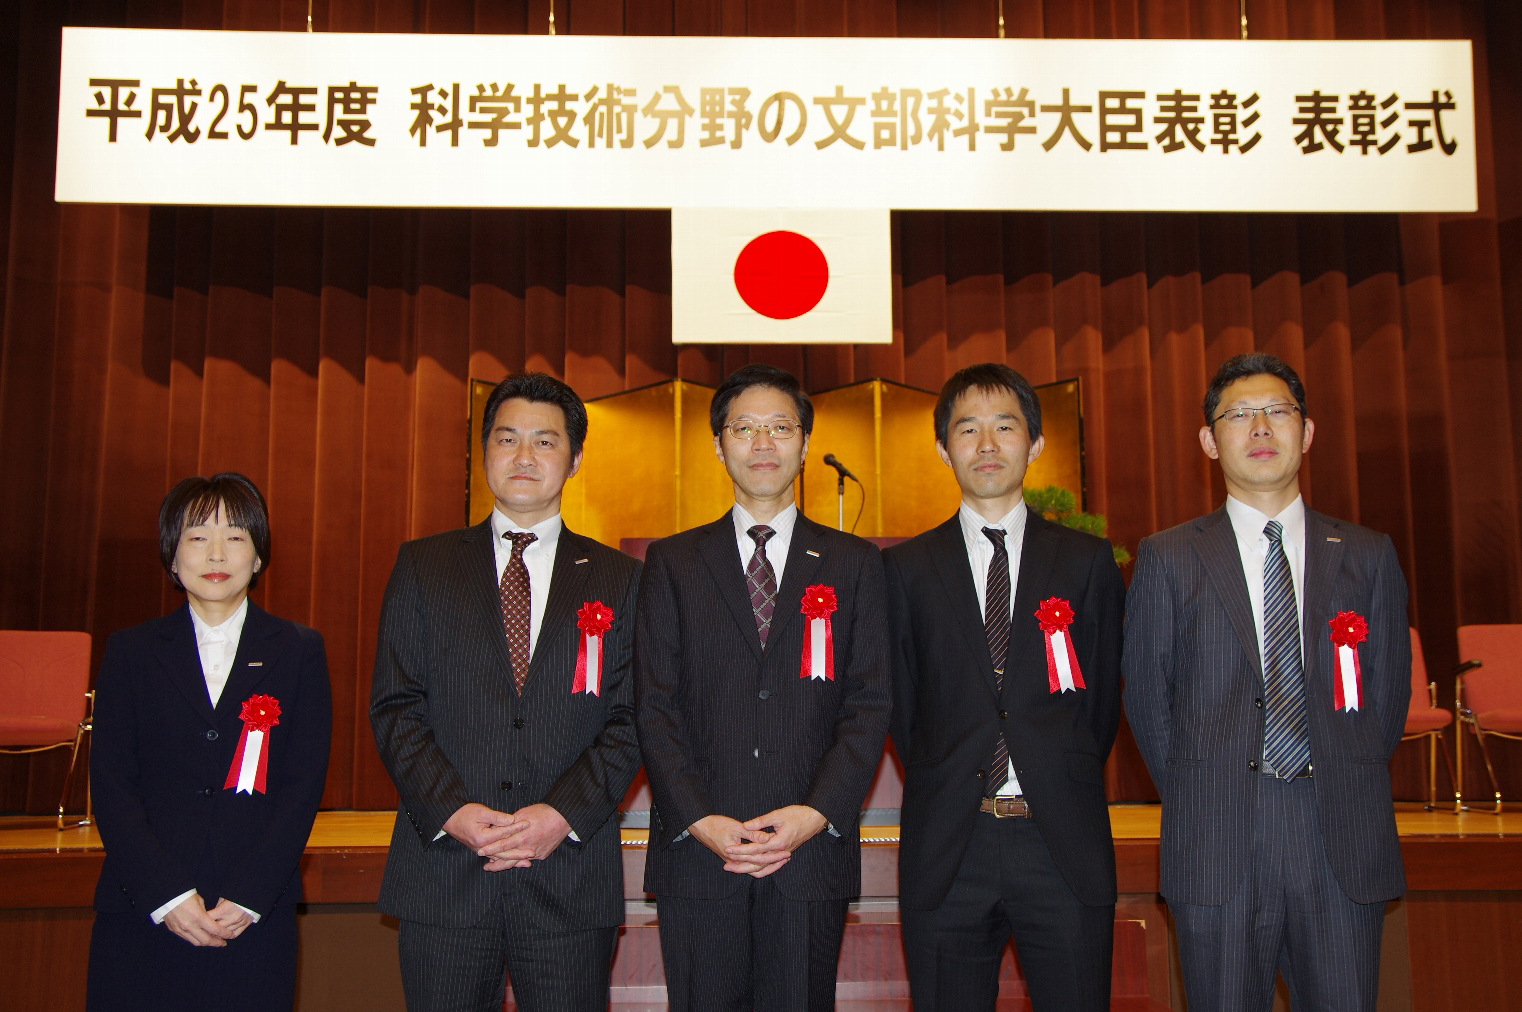 受賞者 （左から）児島理恵、錦織圭史、大野鋭二、久田和也、林 一英